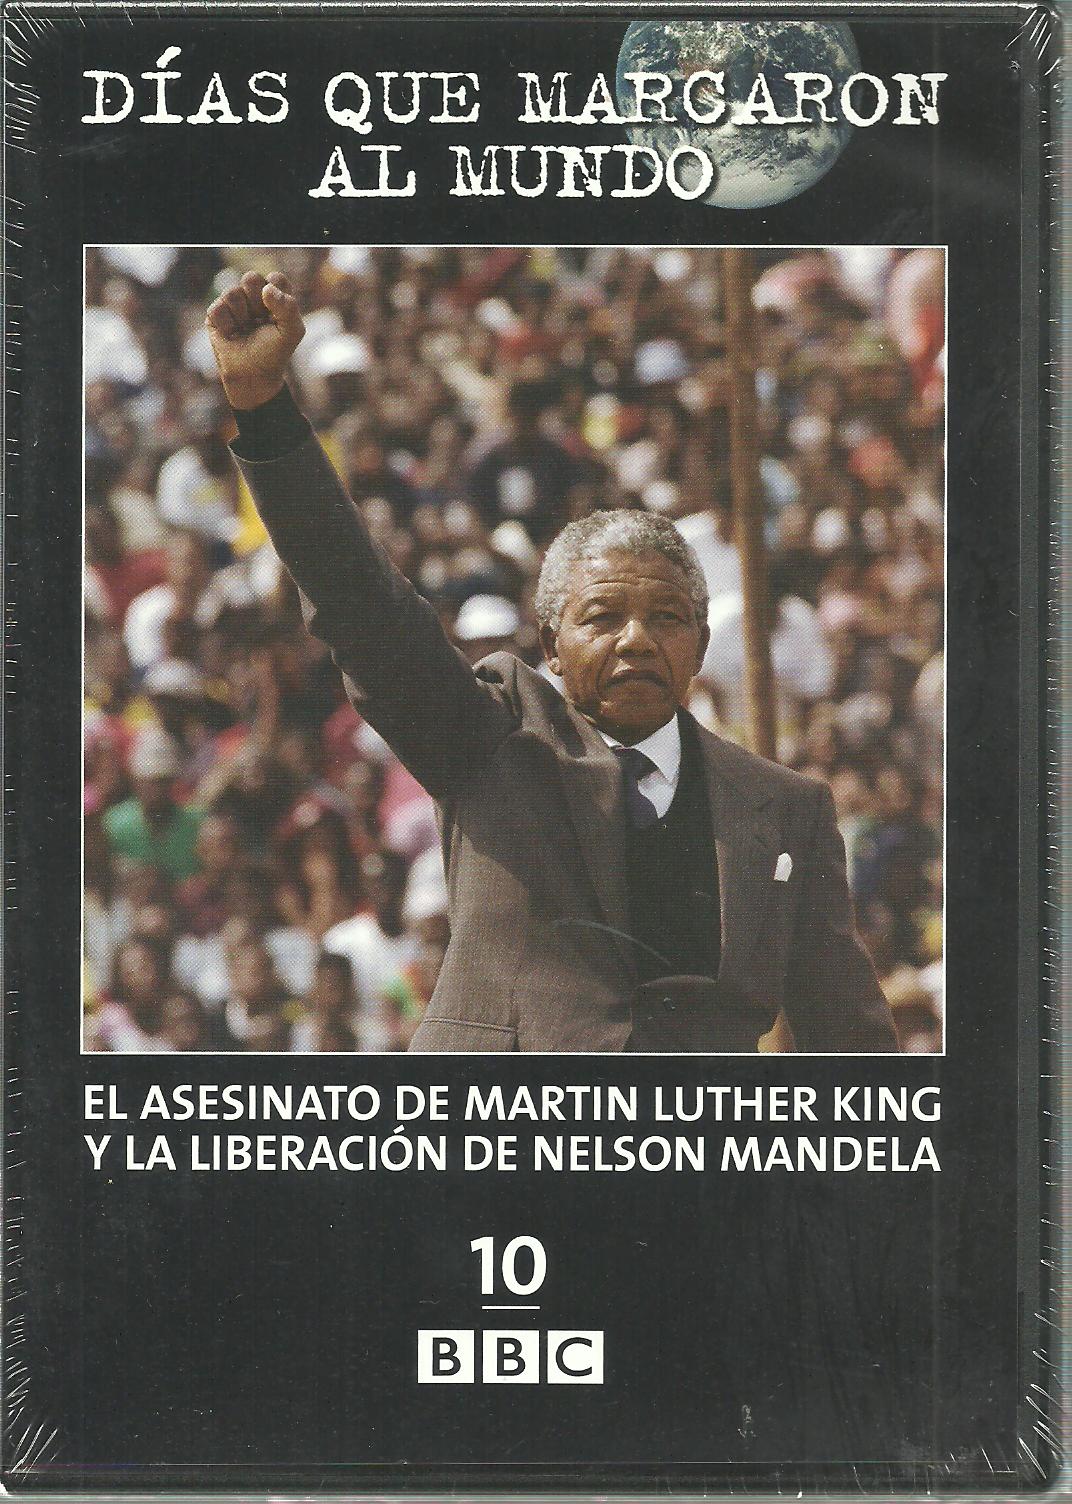 http://2.bp.blogspot.com/_zt_mje7EXjk/THqwxEZ91EI/AAAAAAAABP8/PjVisTC51NY/s1600/planeta+El+Asesinato+de+martin+Luther+King+y+la+LiberaciÃ³n+de+Nelson+mandela+10+dvd.jpg